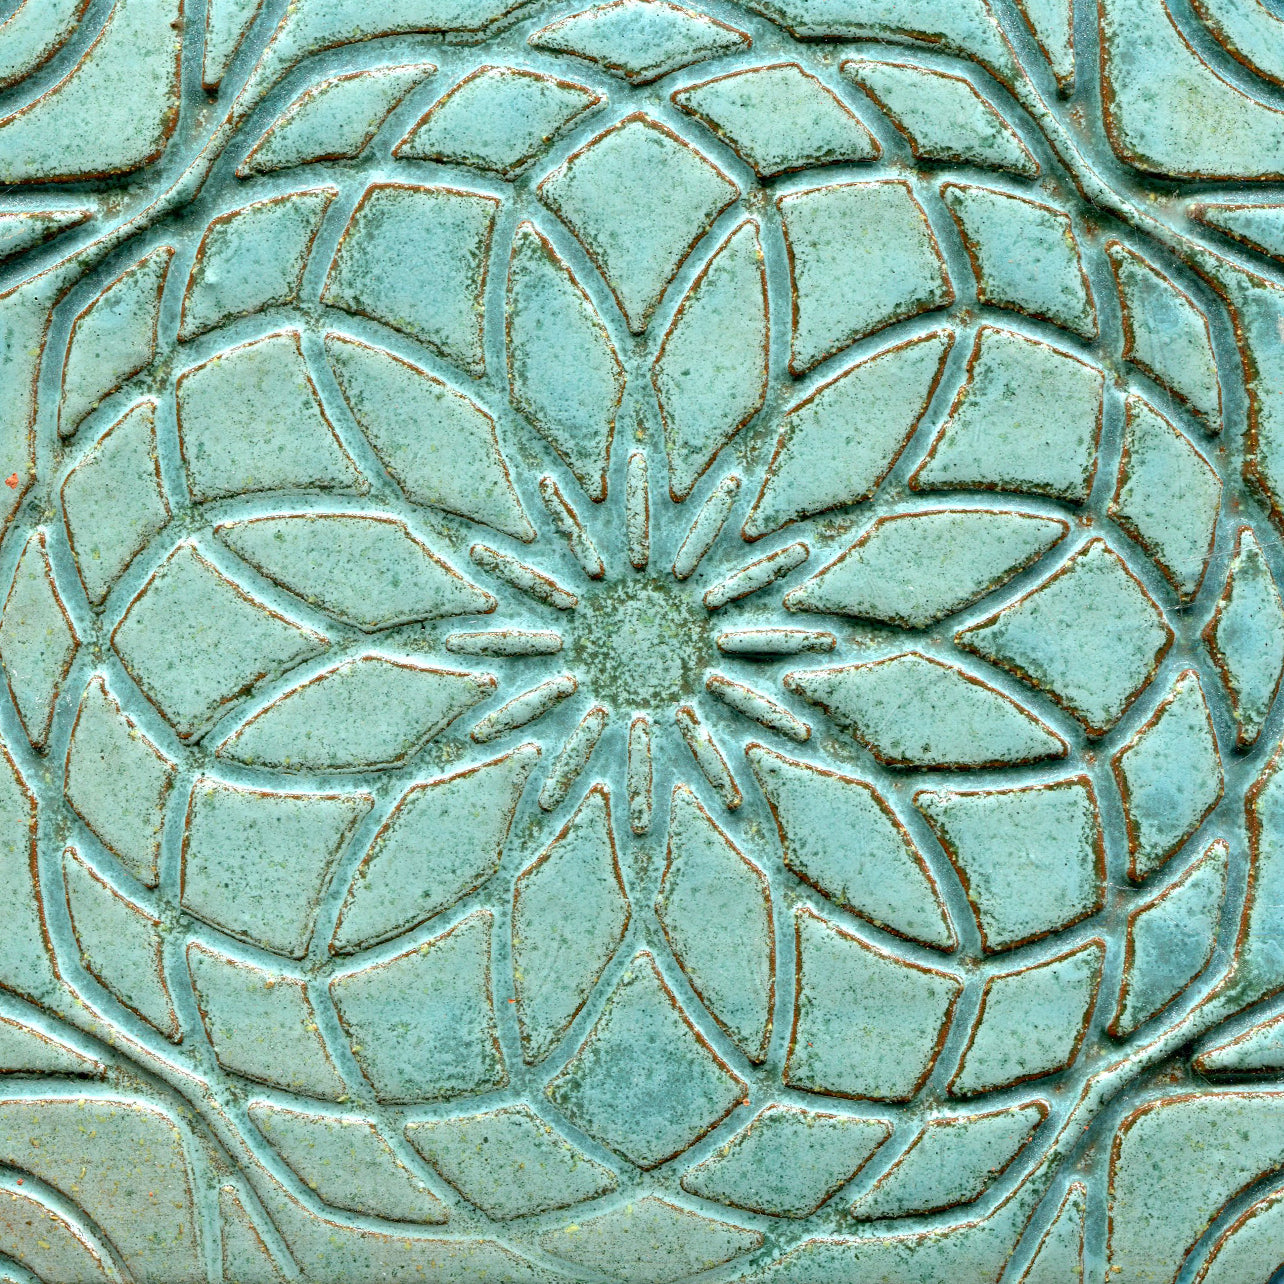 Rose Stamped Tile